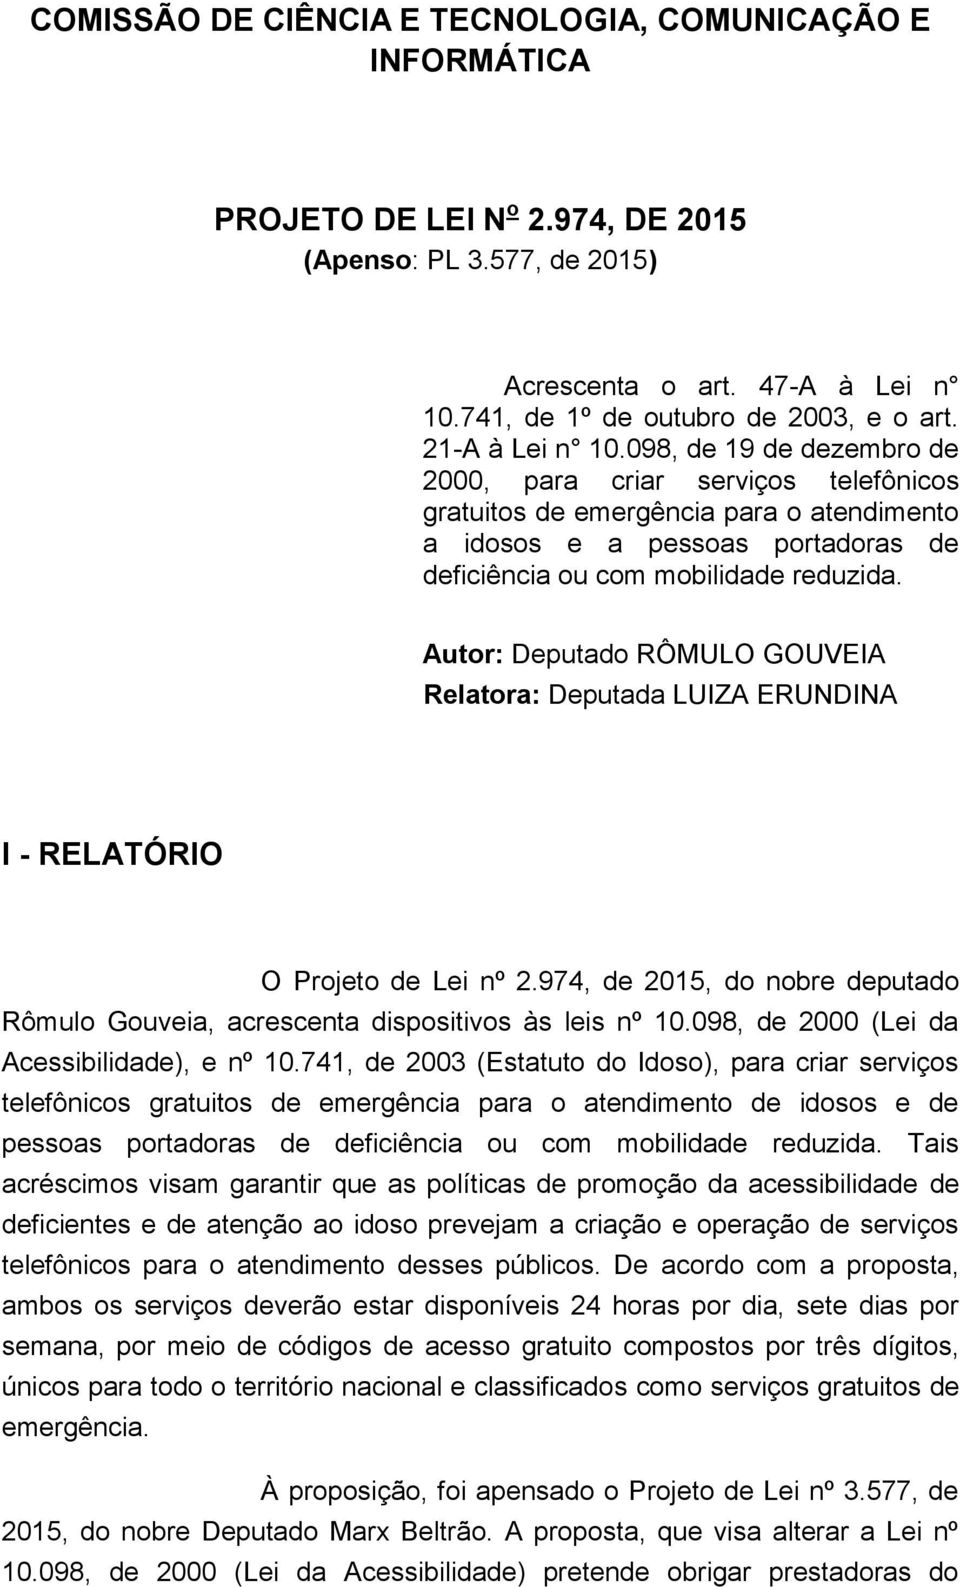 Autor: Deputado RÔMULO GOUVEIA Relatora: Deputada LUIZA ERUNDINA I - RELATÓRIO O Projeto de Lei nº 2.974, de 2015, do nobre deputado Rômulo Gouveia, acrescenta dispositivos às leis nº 10.